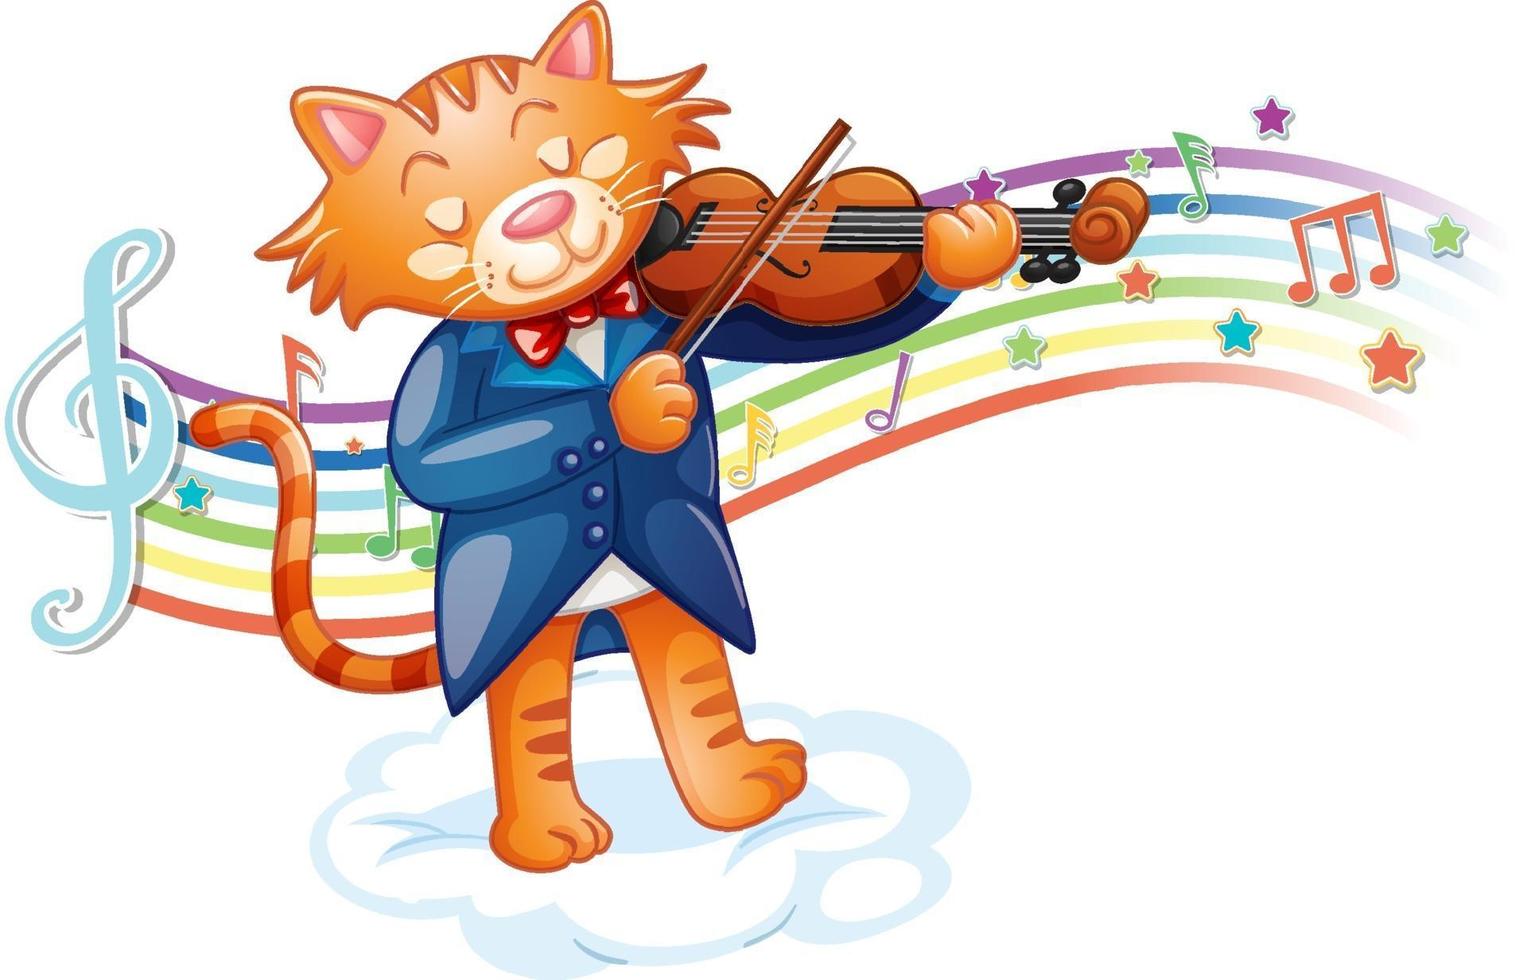 gatto che suona il violino con simboli di melodia sull'onda arcobaleno vettore